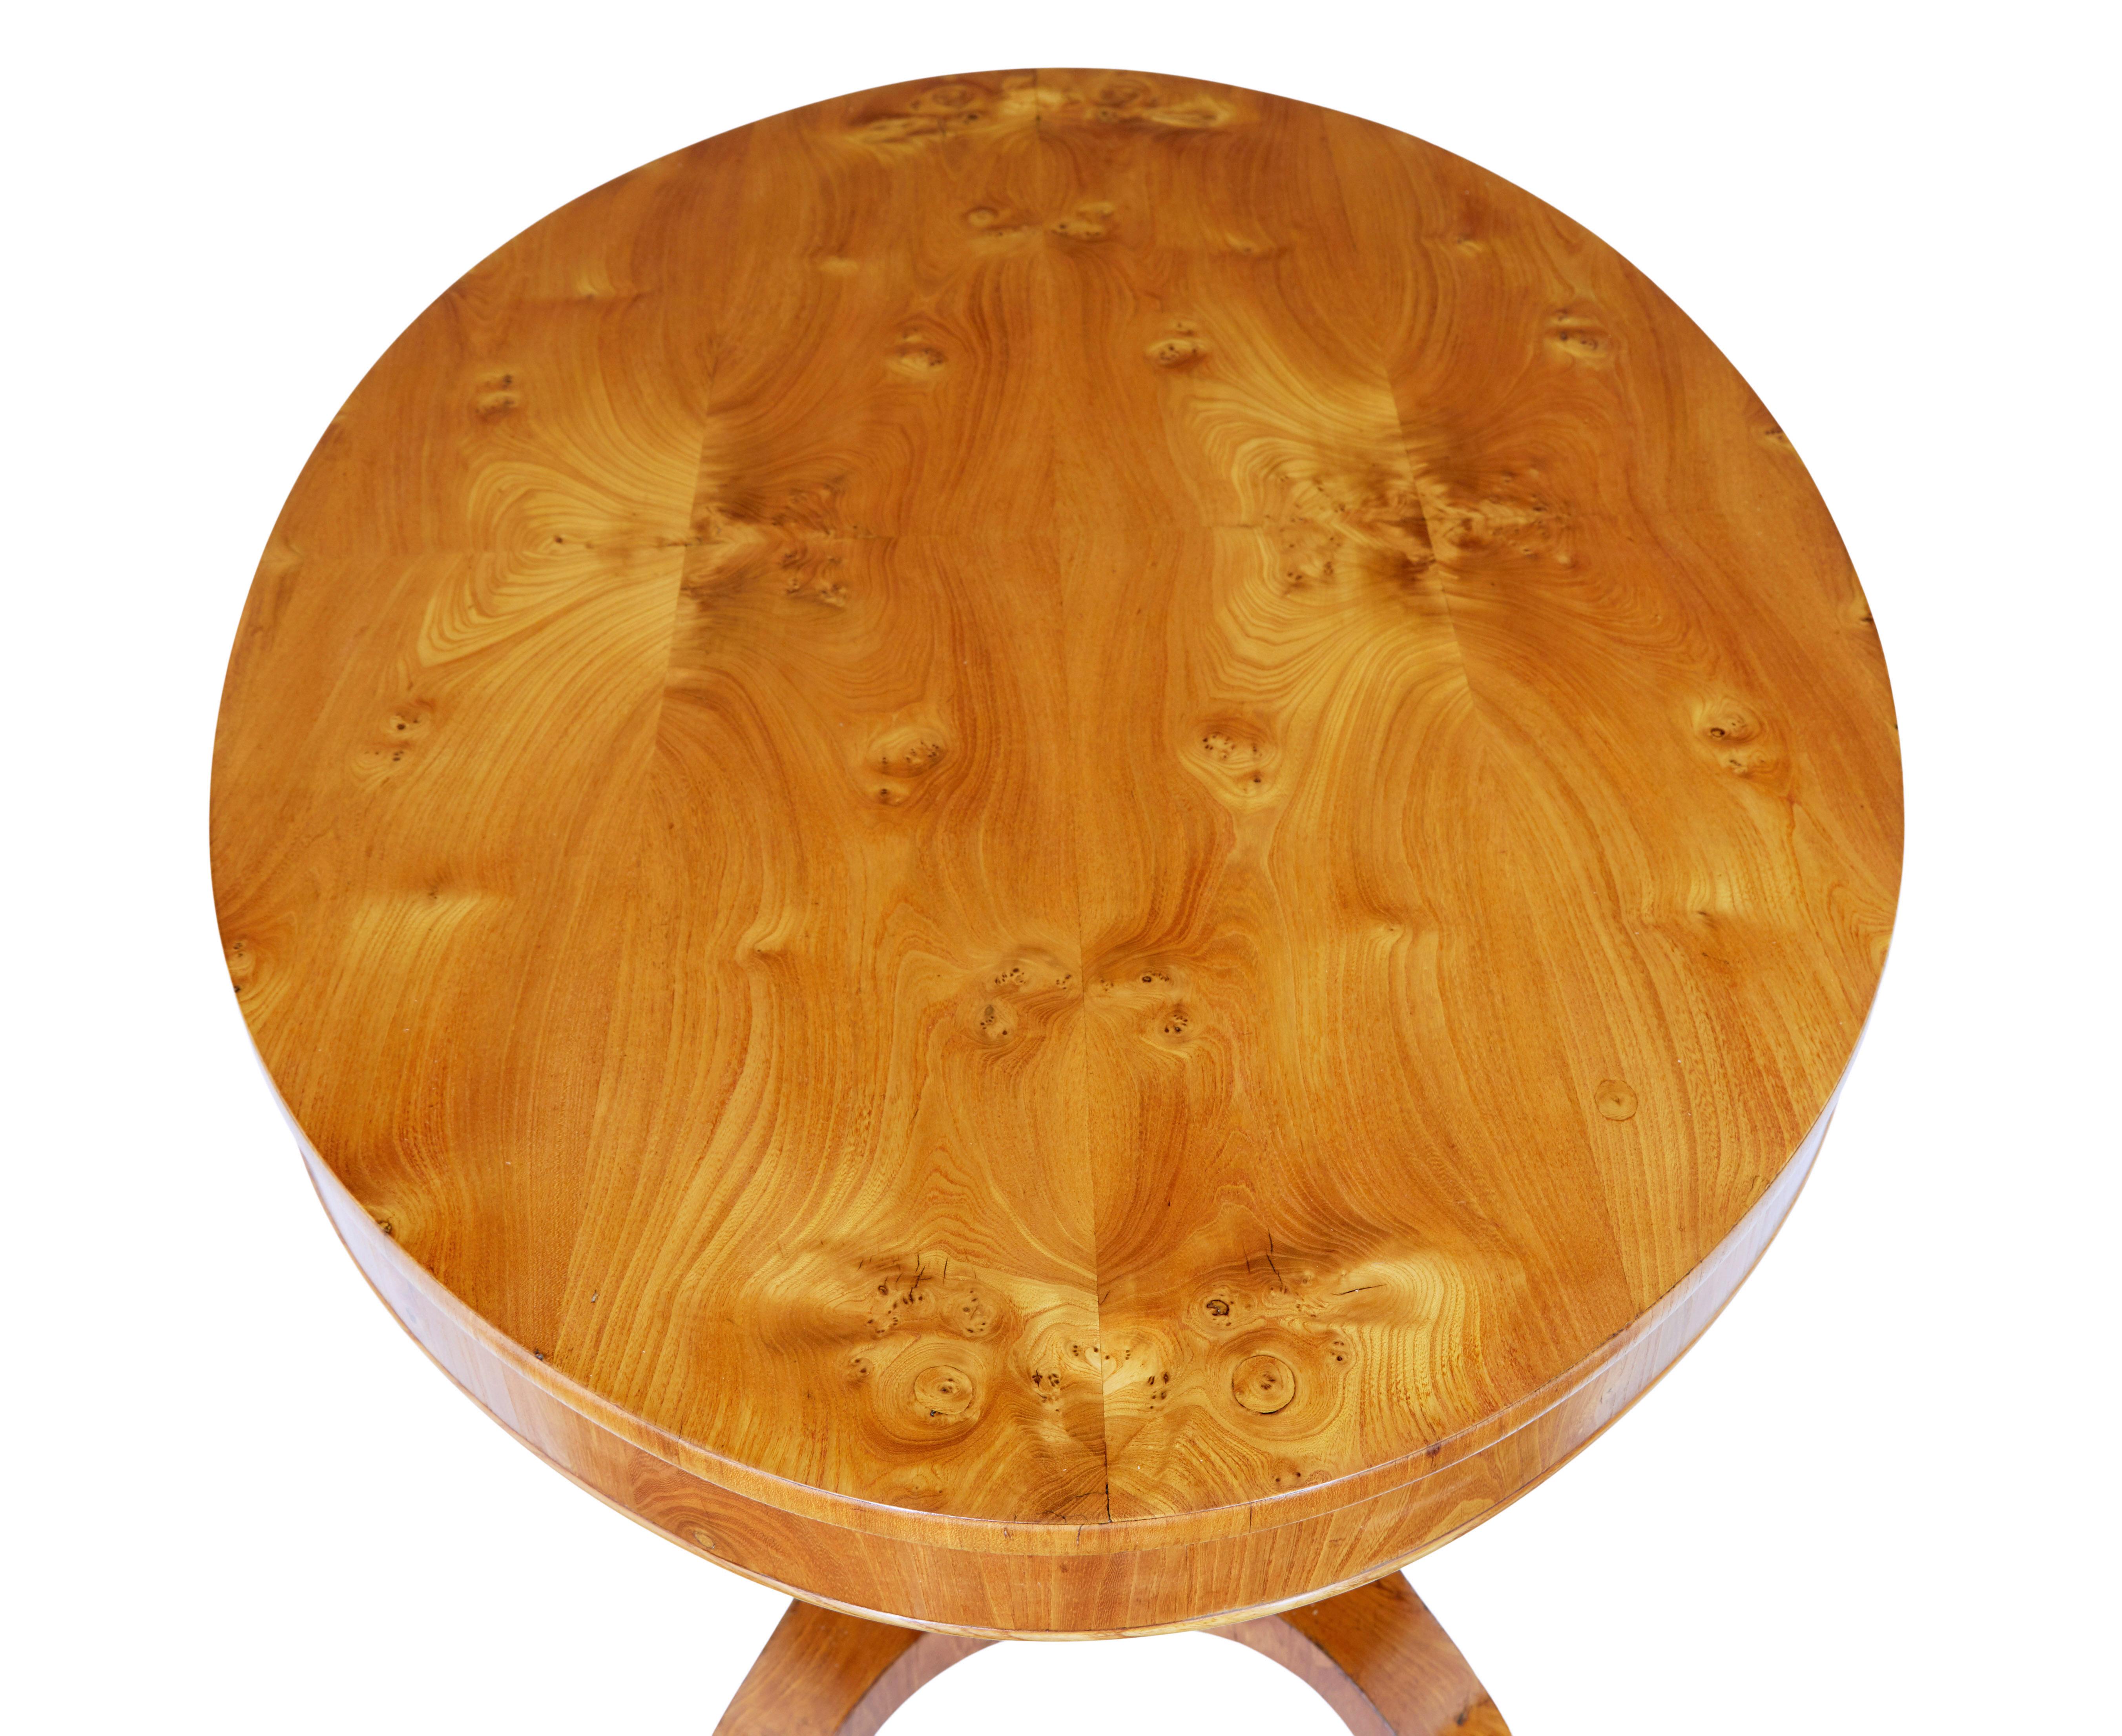 Ovaler Mitteltisch aus Ulmenholz, skandinavisches 19. Jahrhundert, um 1880.

Hochwertiger Mitteltisch, der auch als Beistell- oder Sofatisch verwendet werden kann.

Ovale Oberfläche, mit angepasstem Ulmenfurnier, massive Schürze mit Wulstrand. 